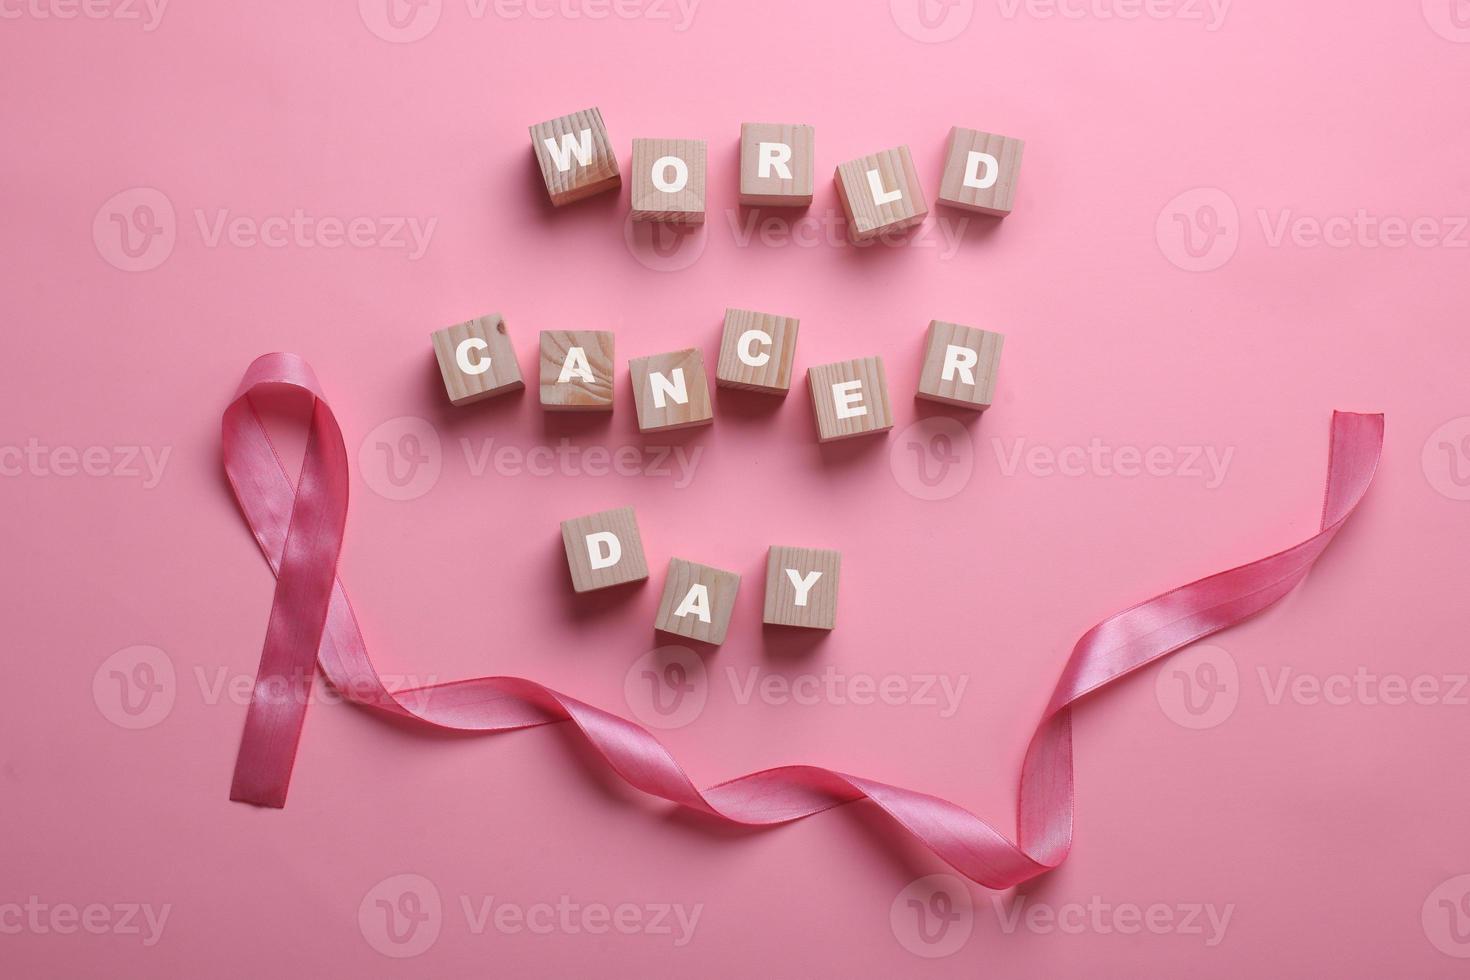 fita rosa para o dia mundial do câncer e conscientização do câncer de mama foto